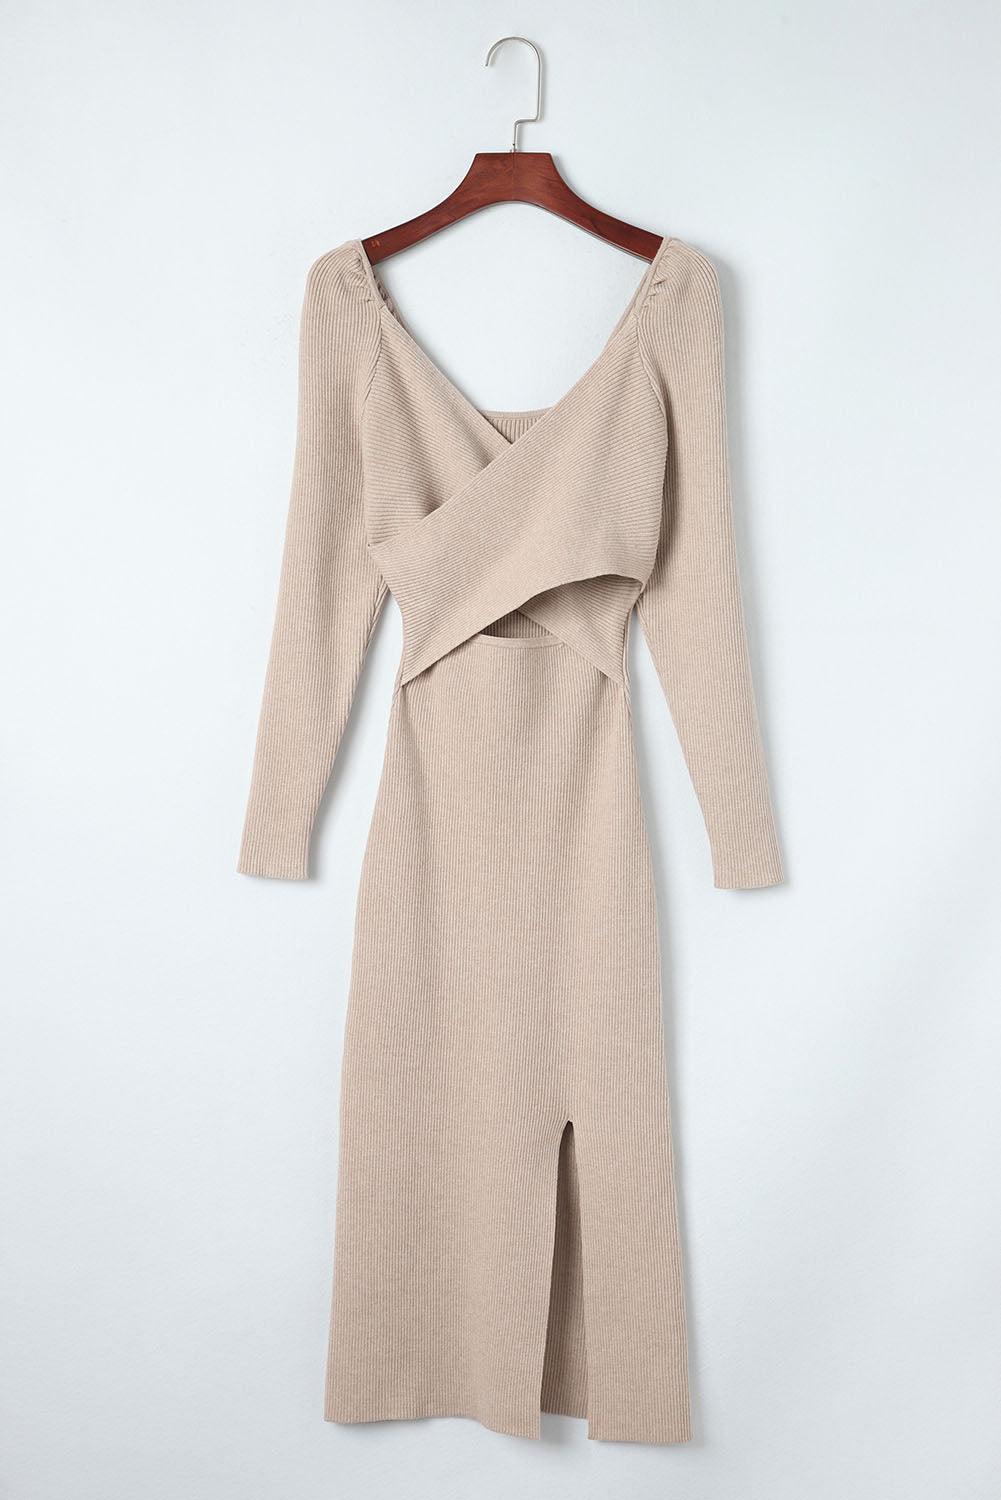 Crisscross Long Sleeve Slit Sweater Dress - CADEAUME